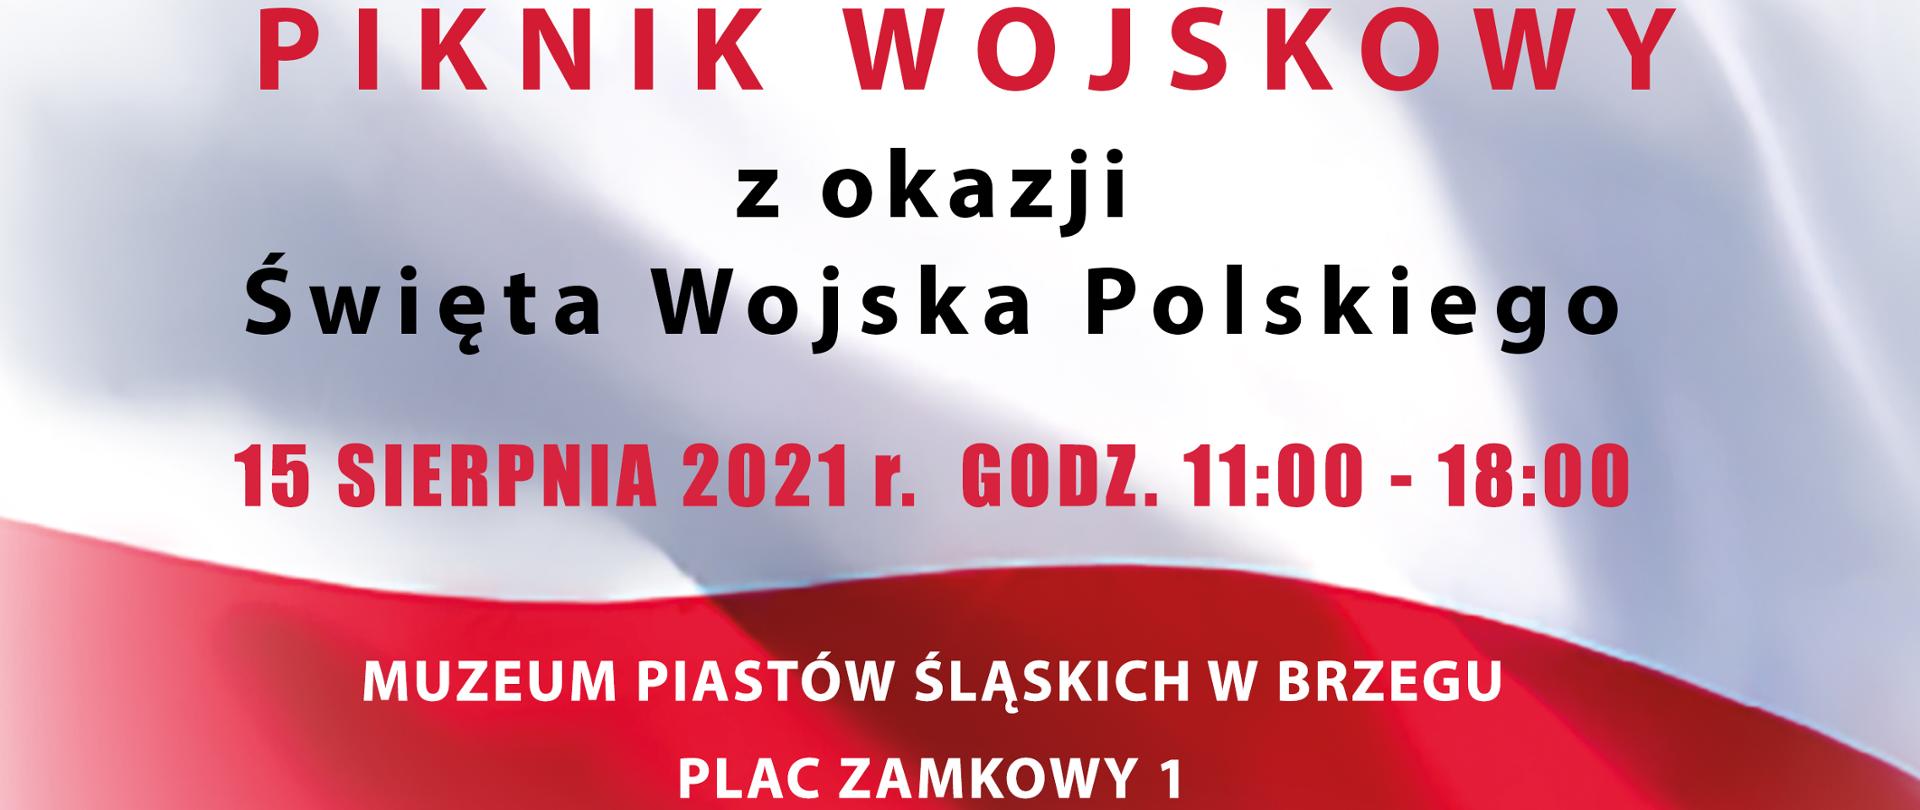 Piknik Wojskowy z okazji Święta Wojska Polskiego